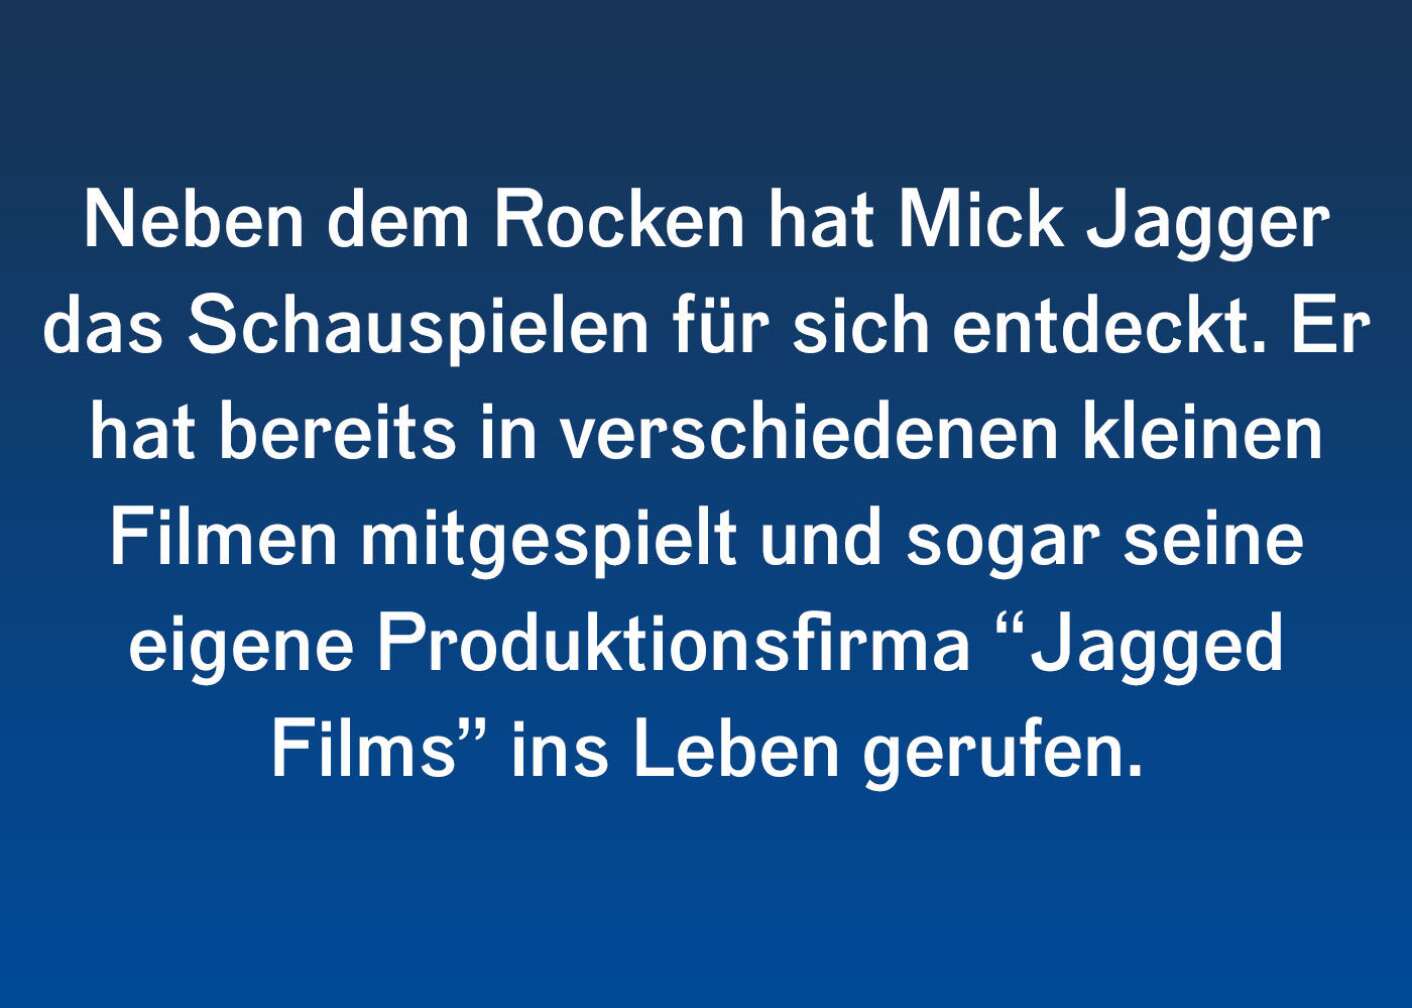 Facts & Stories zu Mick Jagger